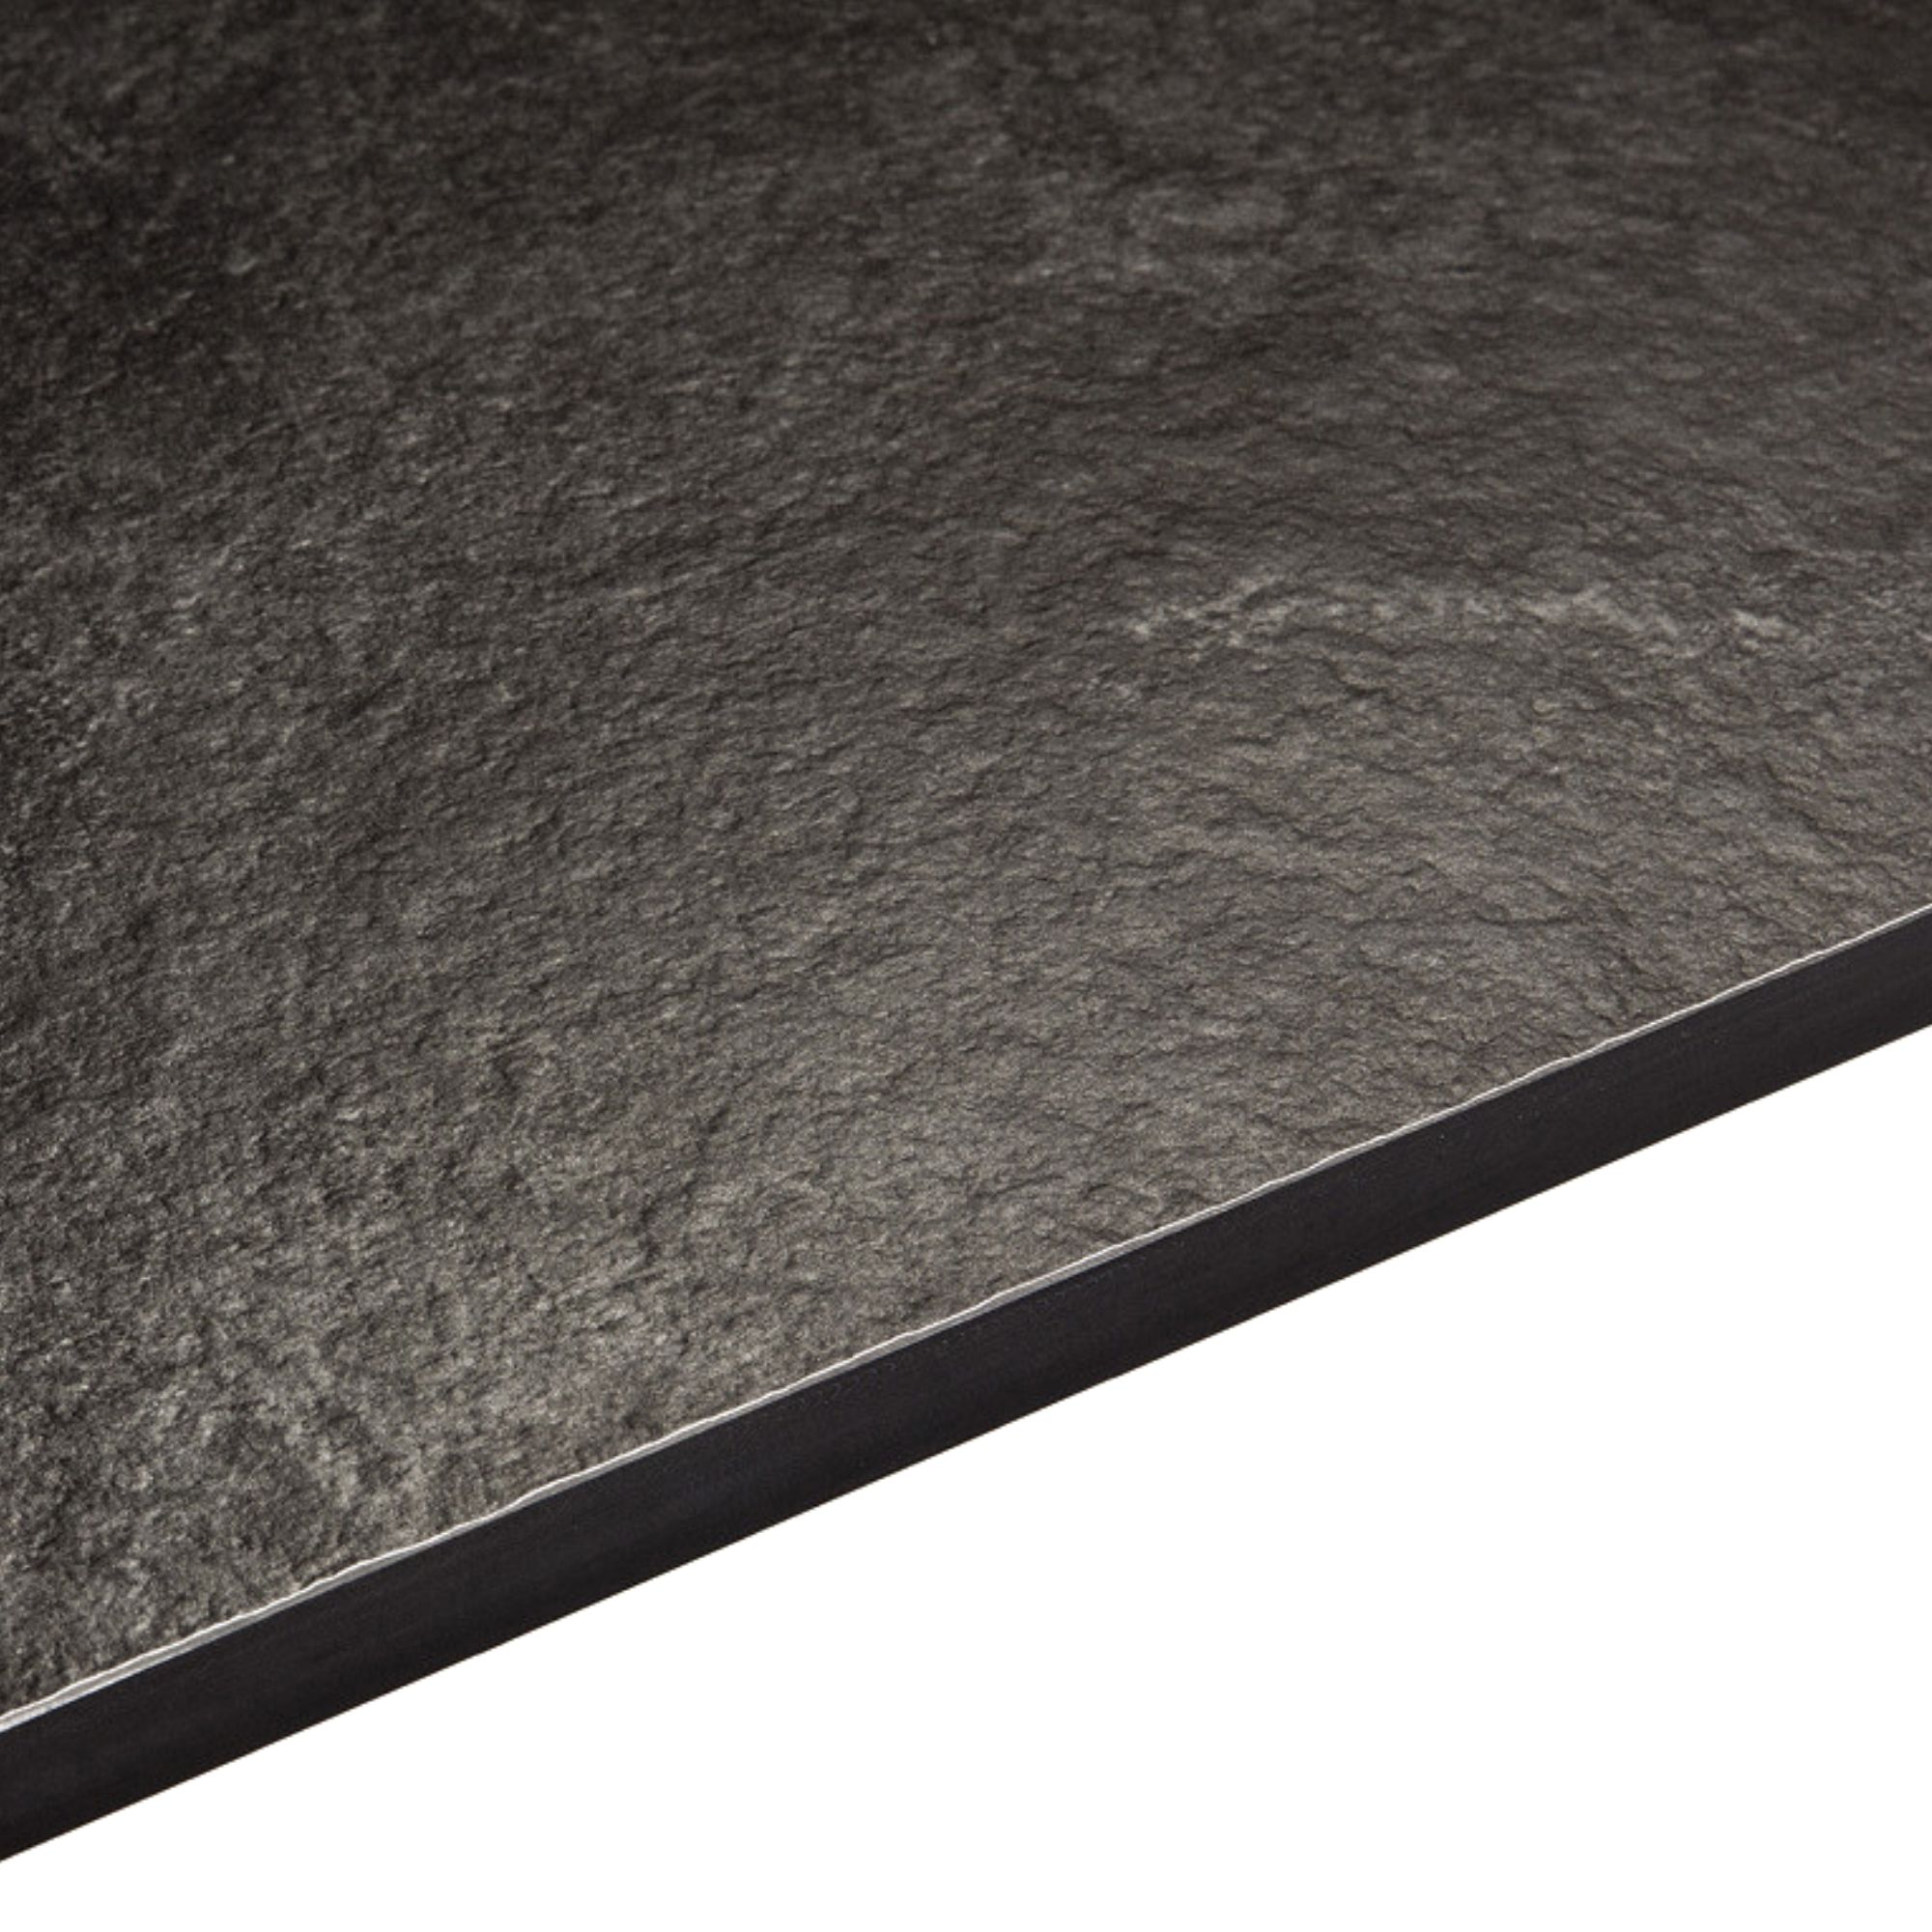 12.5 Zinc Argente Black Stone effect Breakfast bar Worktop, (L)3020mm